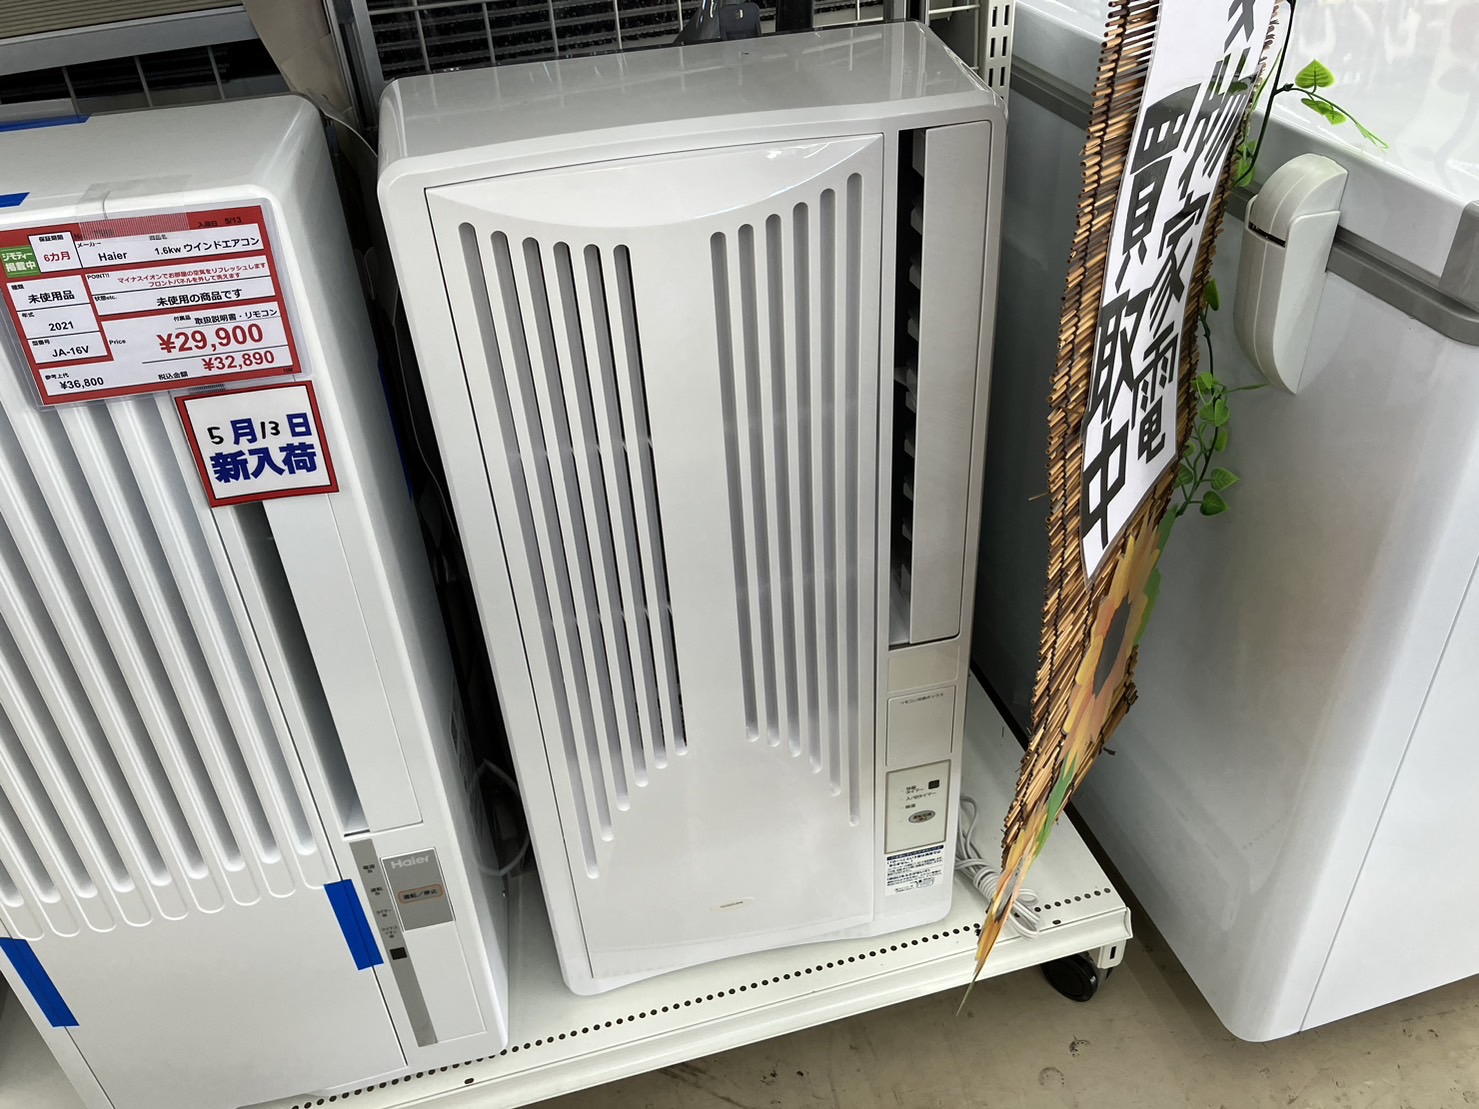 【KOIZUMI/コイズミ 1.6Kw ウインドウエアコン KAW-1695 2020年式 窓エアコン 】を買取いたしました！ - リサイクルマートは現在冷蔵庫の買取、家具の買取強化中です！お気軽にお問い合わせください。